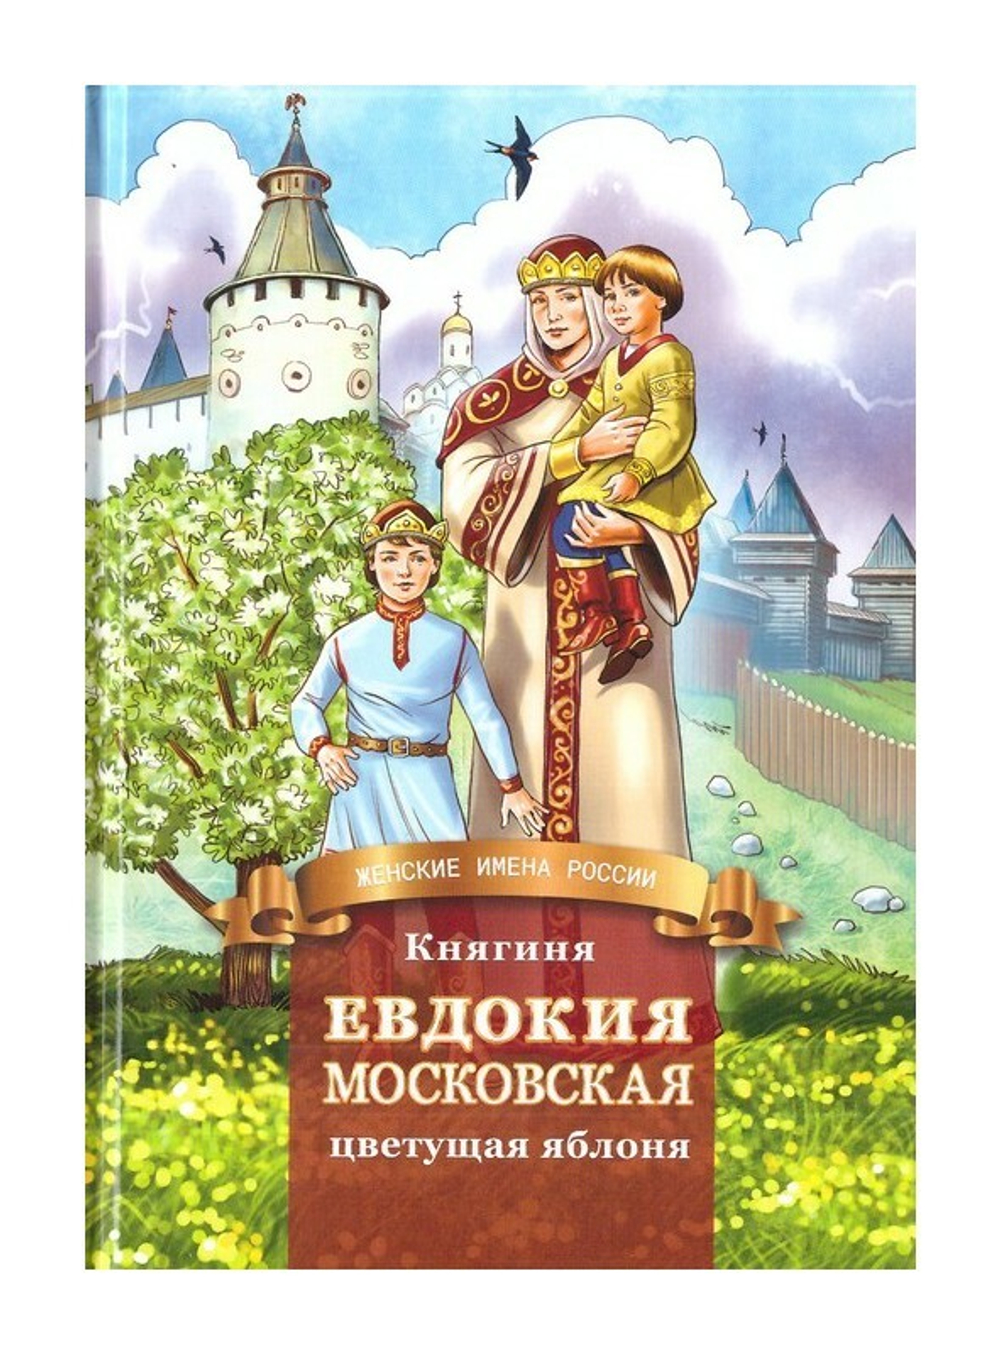 Княгиня Евдокия Московская - цветущая яблоня. Жизнеописание в пересказе для детей